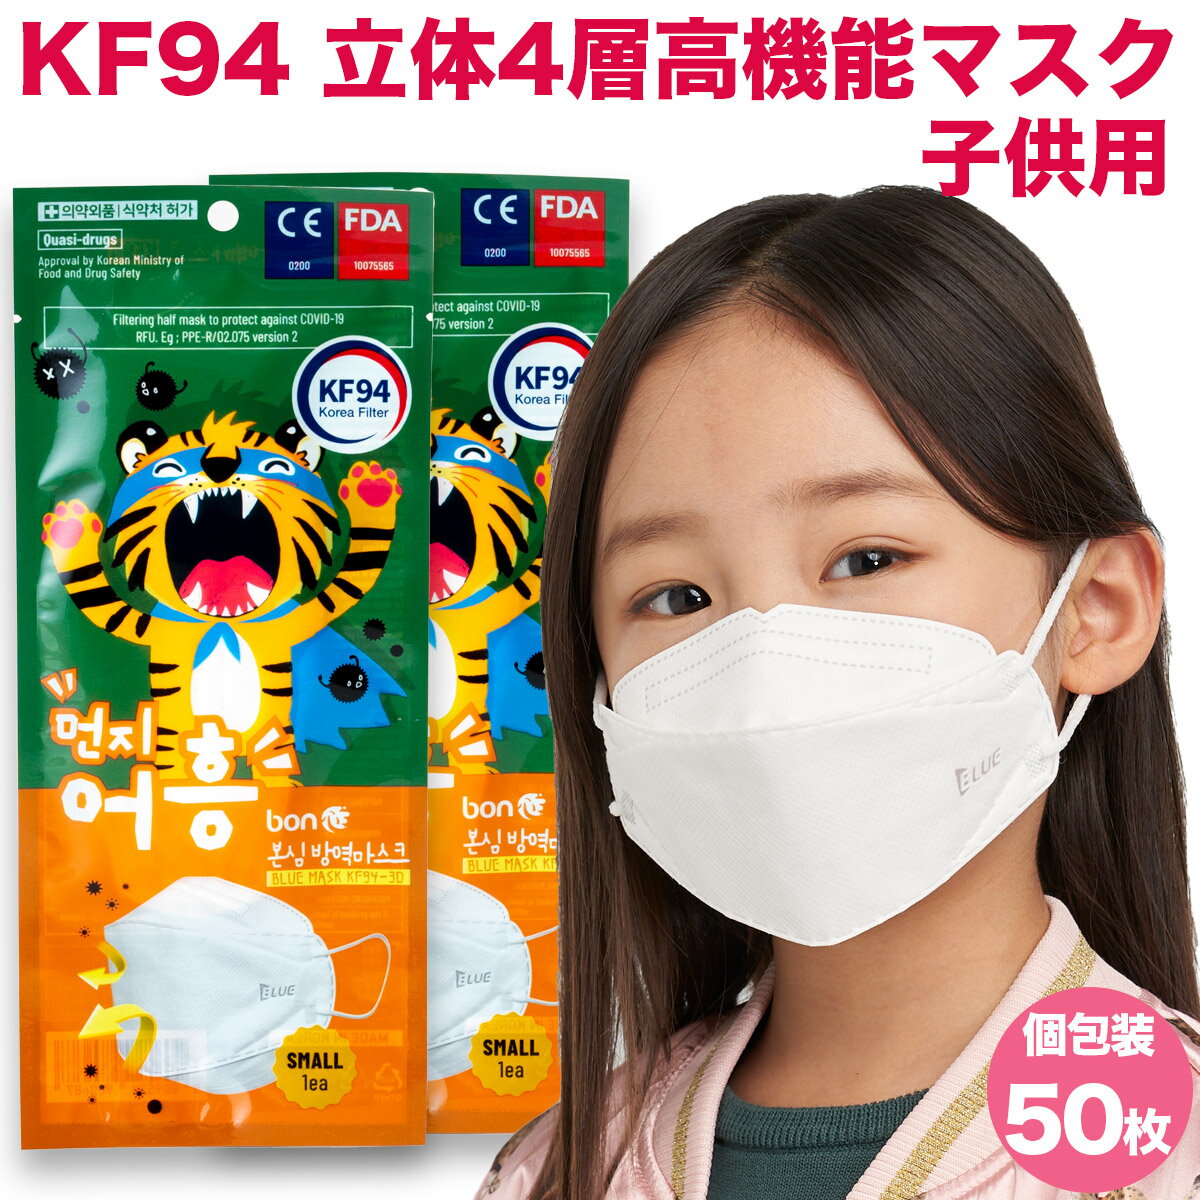 KF94韓国マスク】小さめ・子供用（認証・正規品など）のおすすめ ...